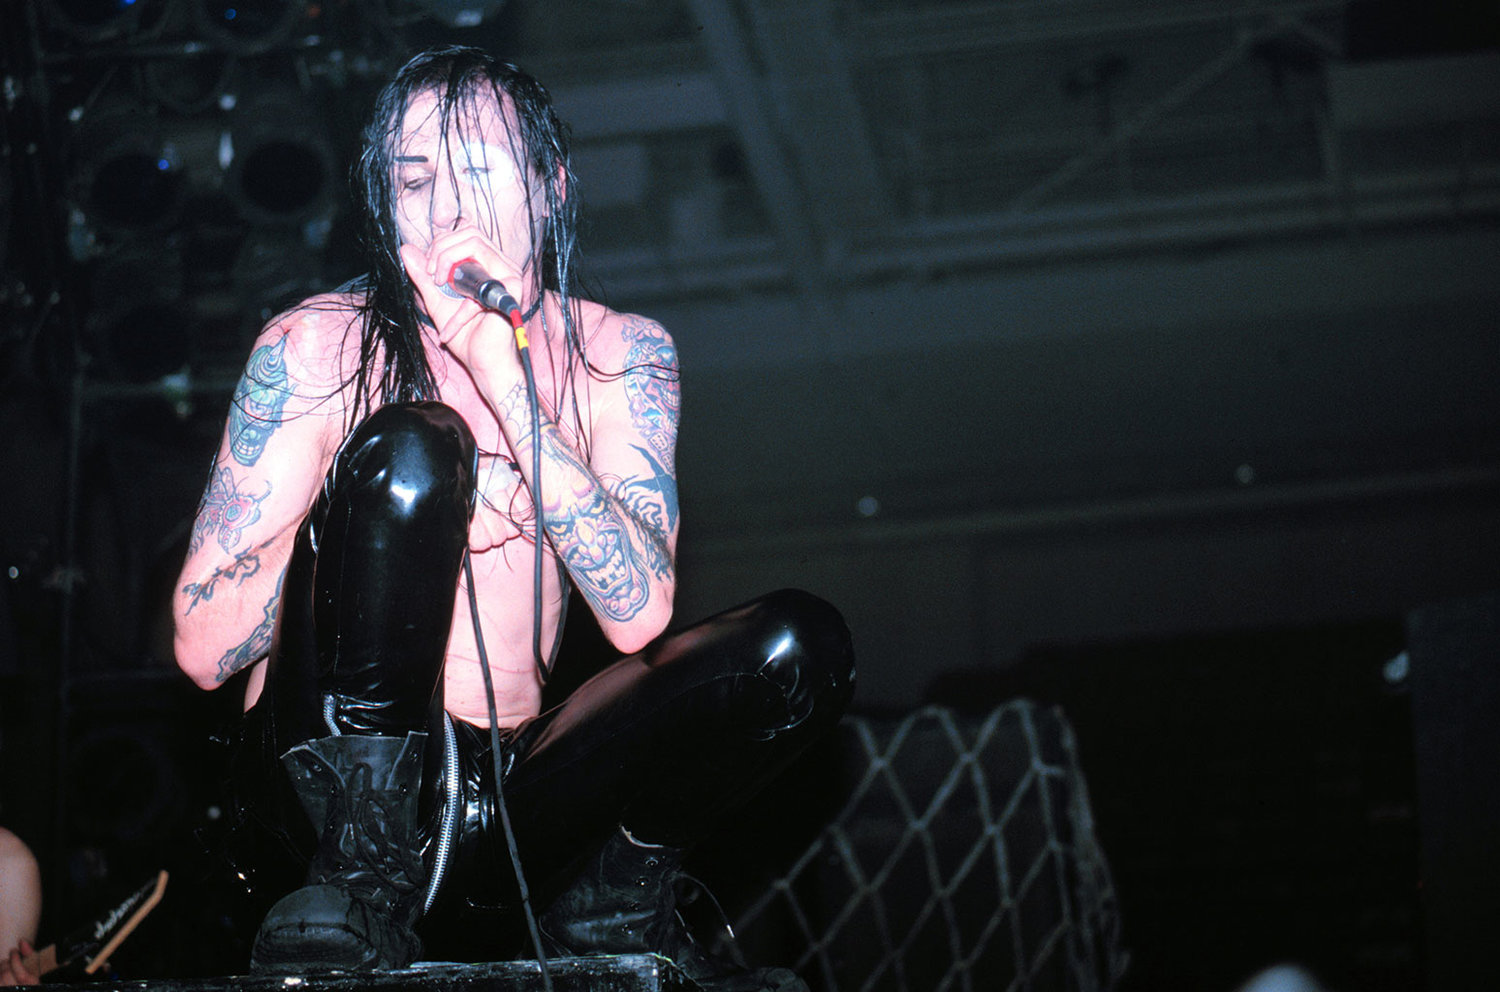 Marilyn-Manson-1995-a-billboard-1548.jpg